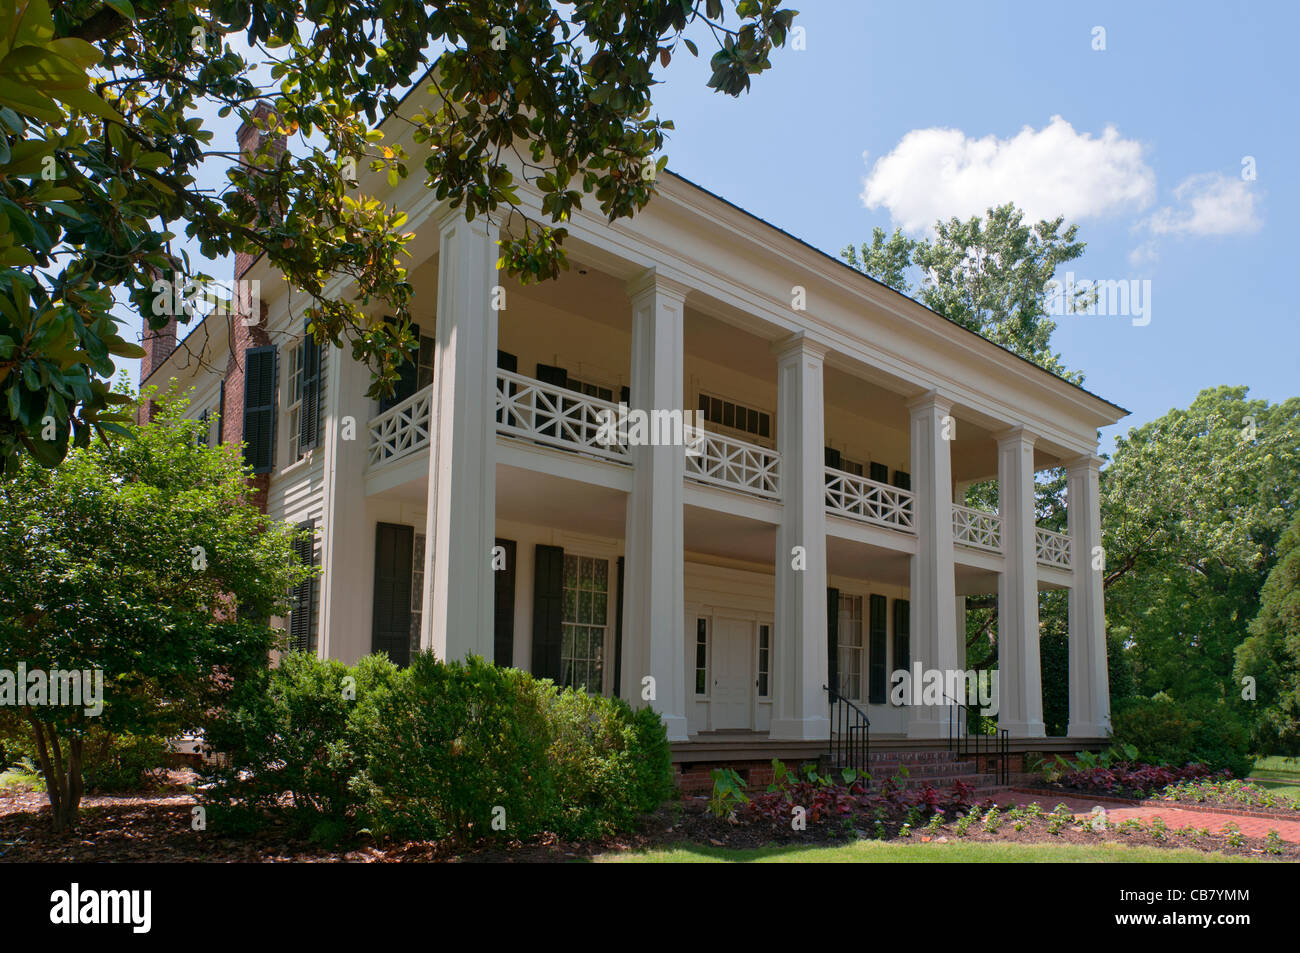 Alabama, Birmingham, Birmingham, Arlington's dernière renaissance grecque antebellum home, vers 1840 Banque D'Images